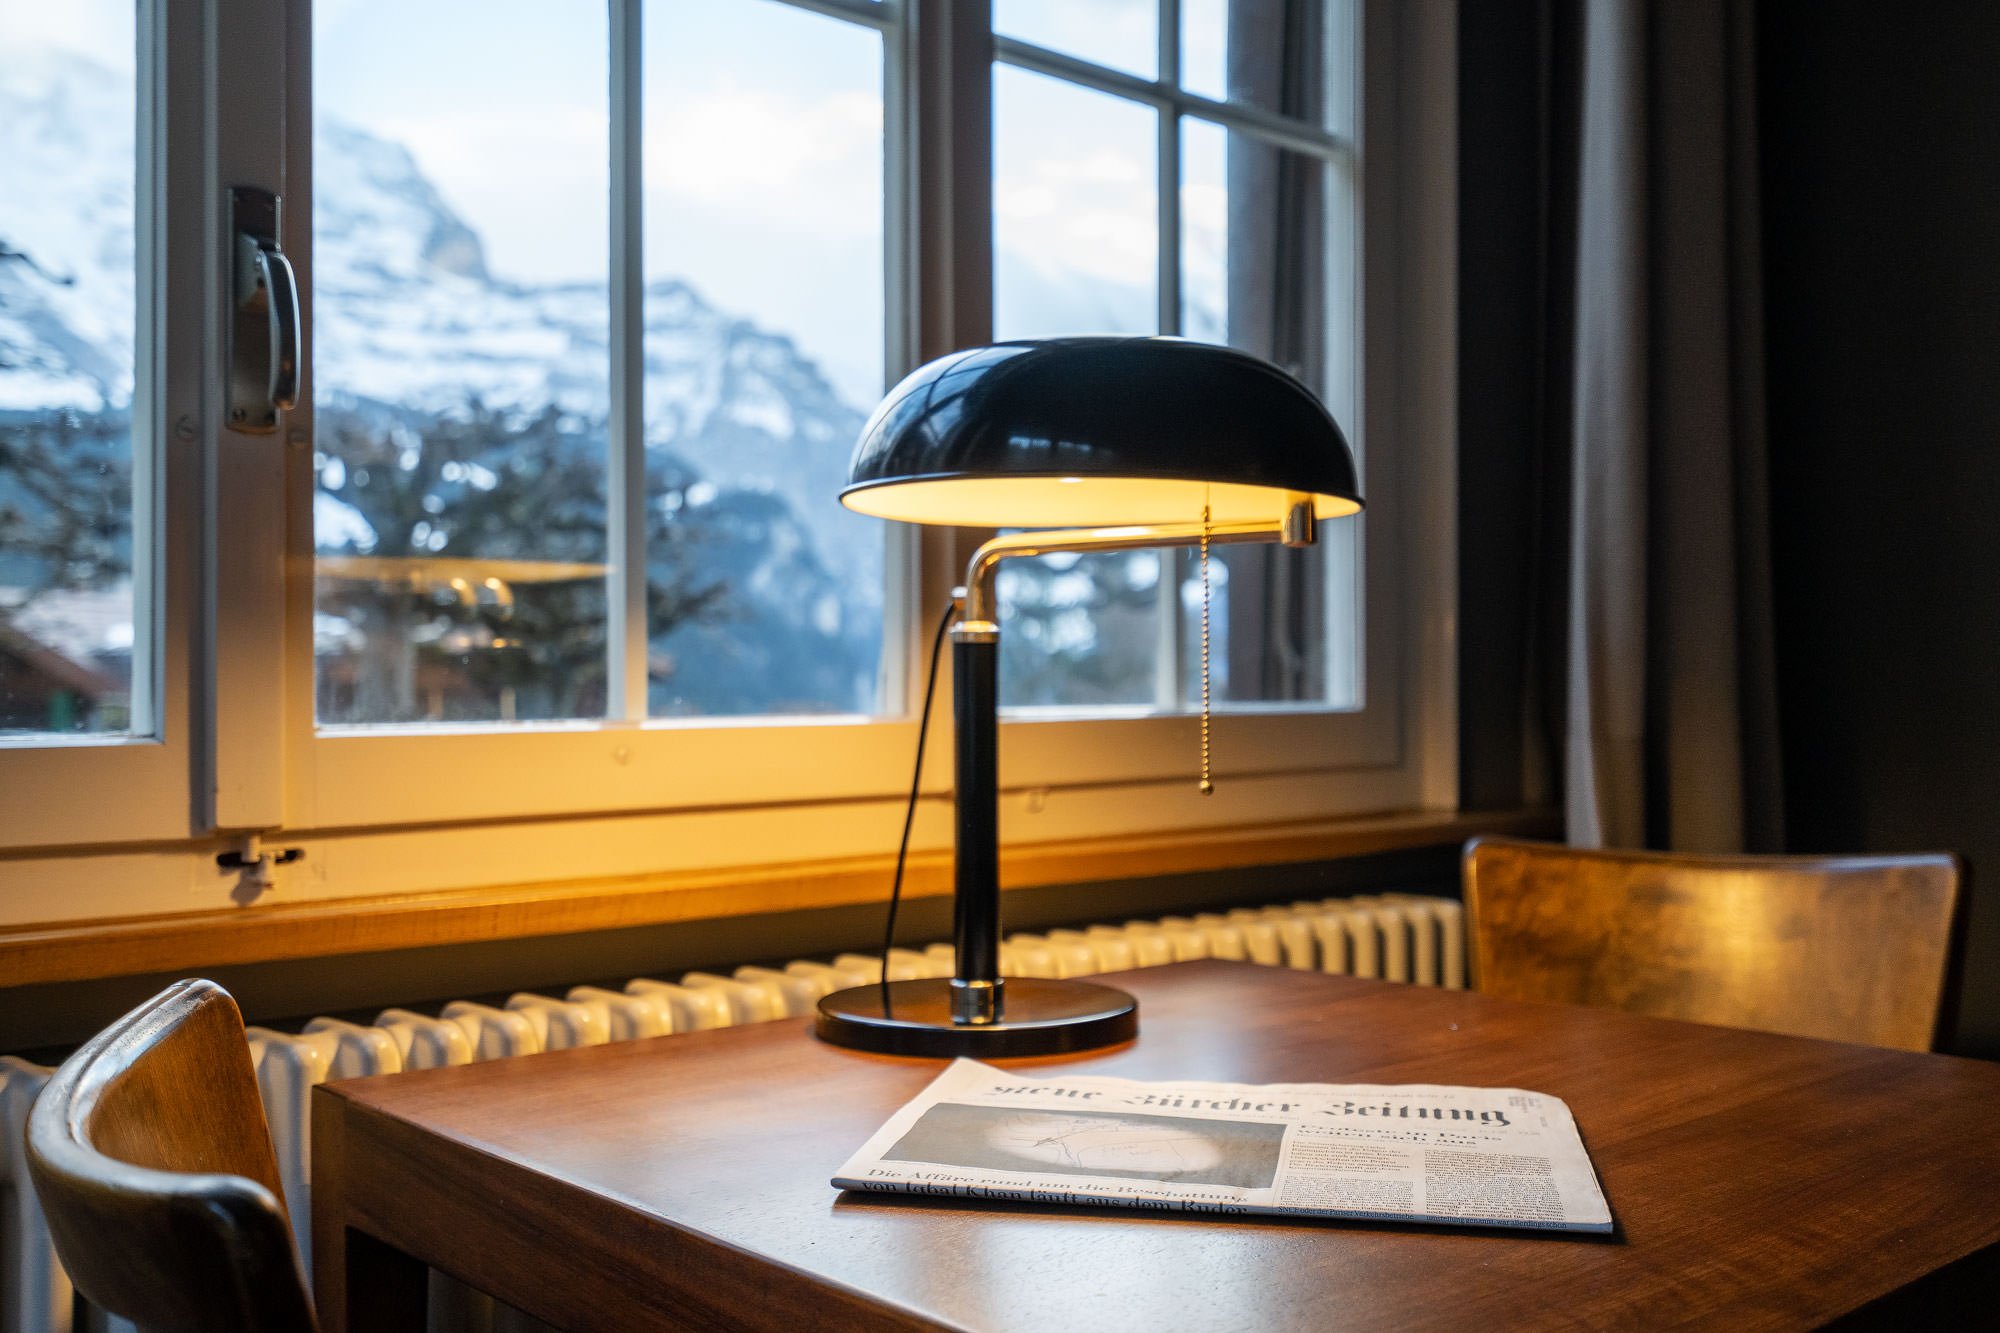 Hotelfotografie-Schweiz-Fotograf-Interlaken-Thun-Bern-MAMO-Photography